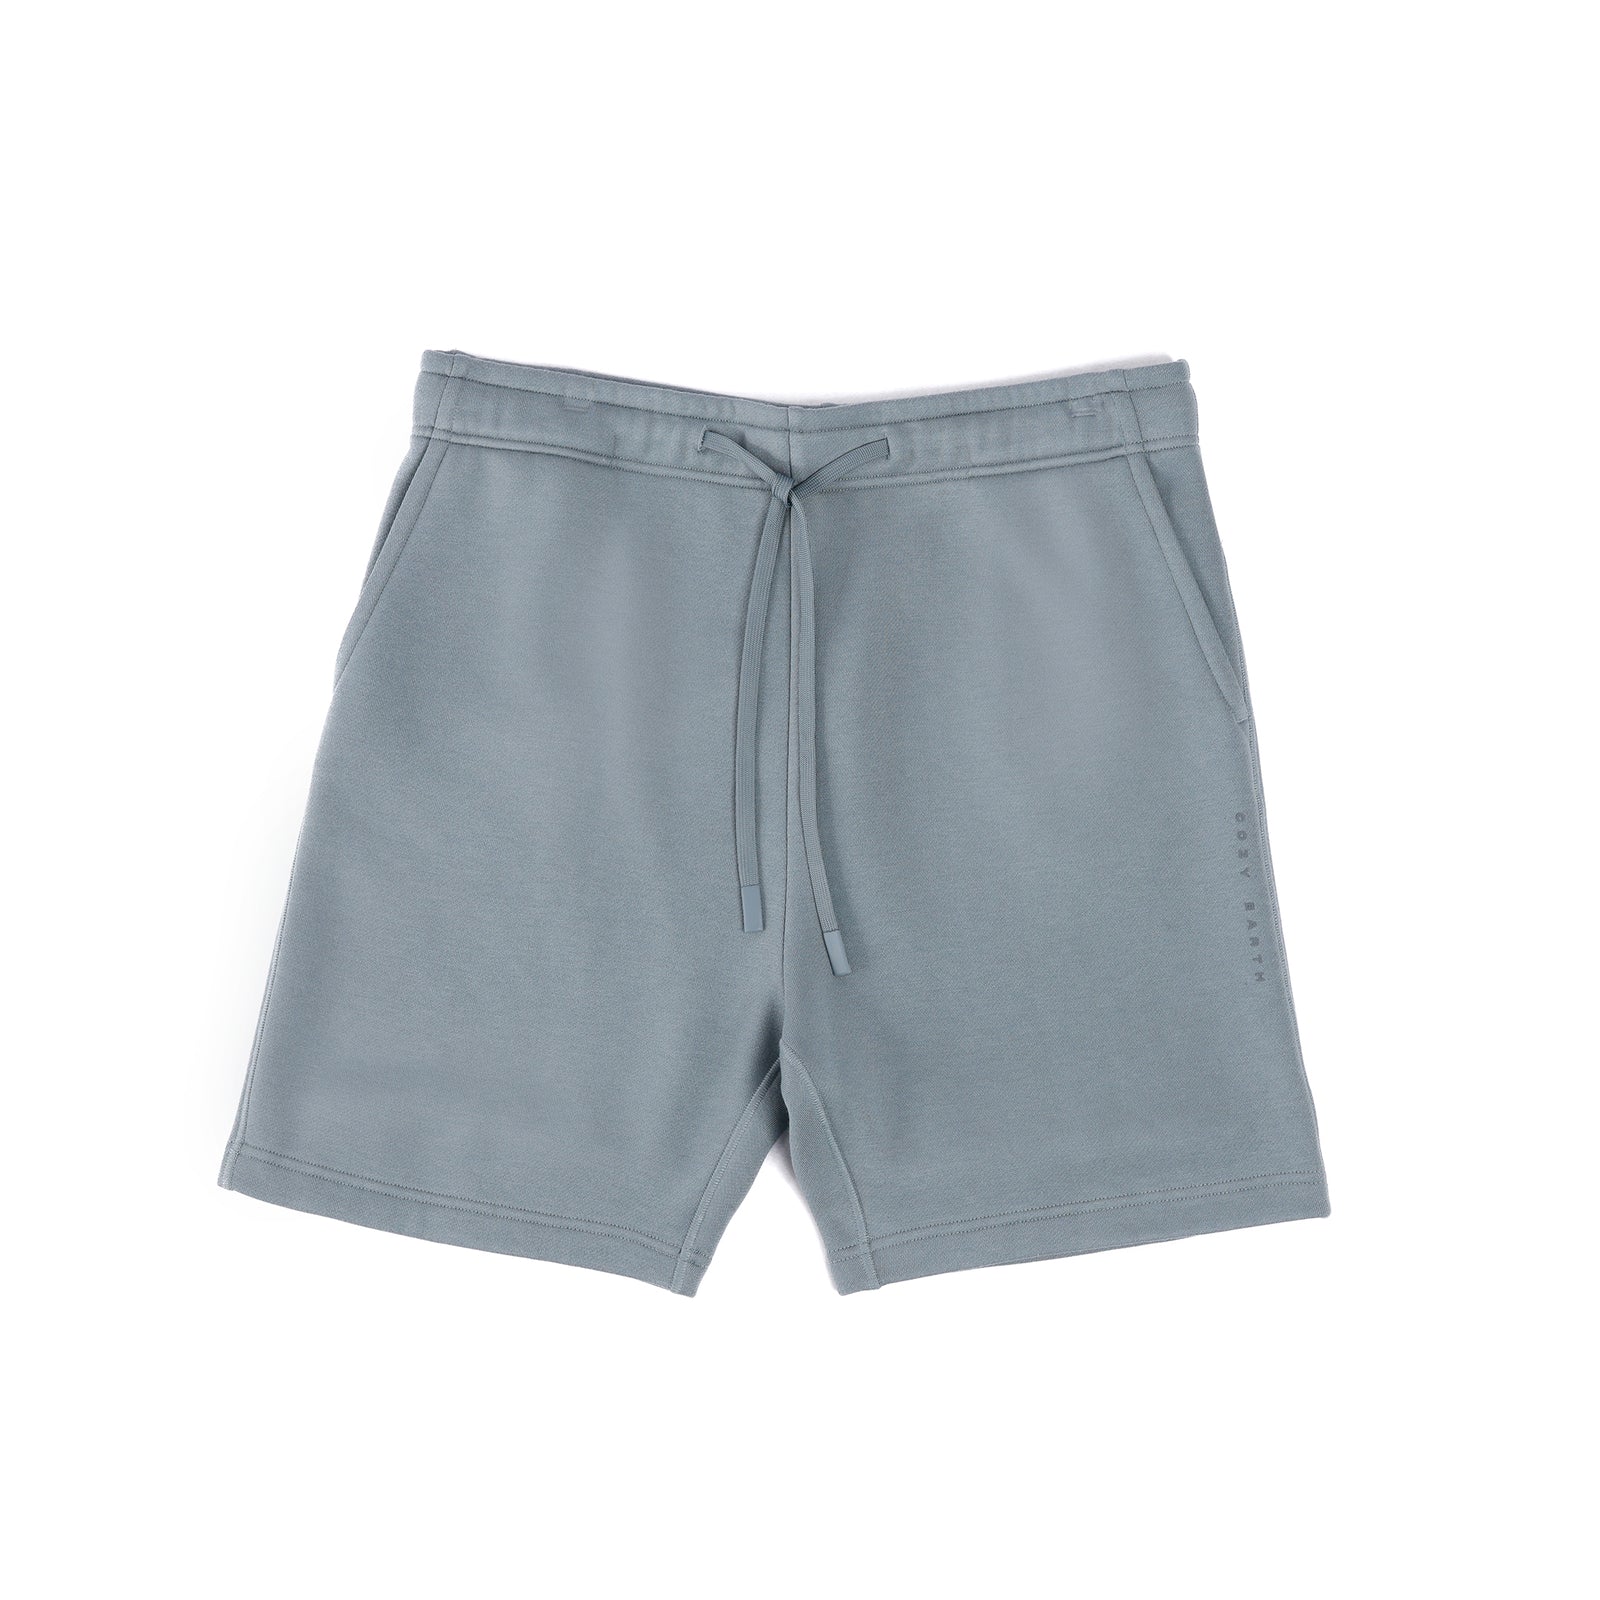 Smokey Blue CityScape Shorts with white background 